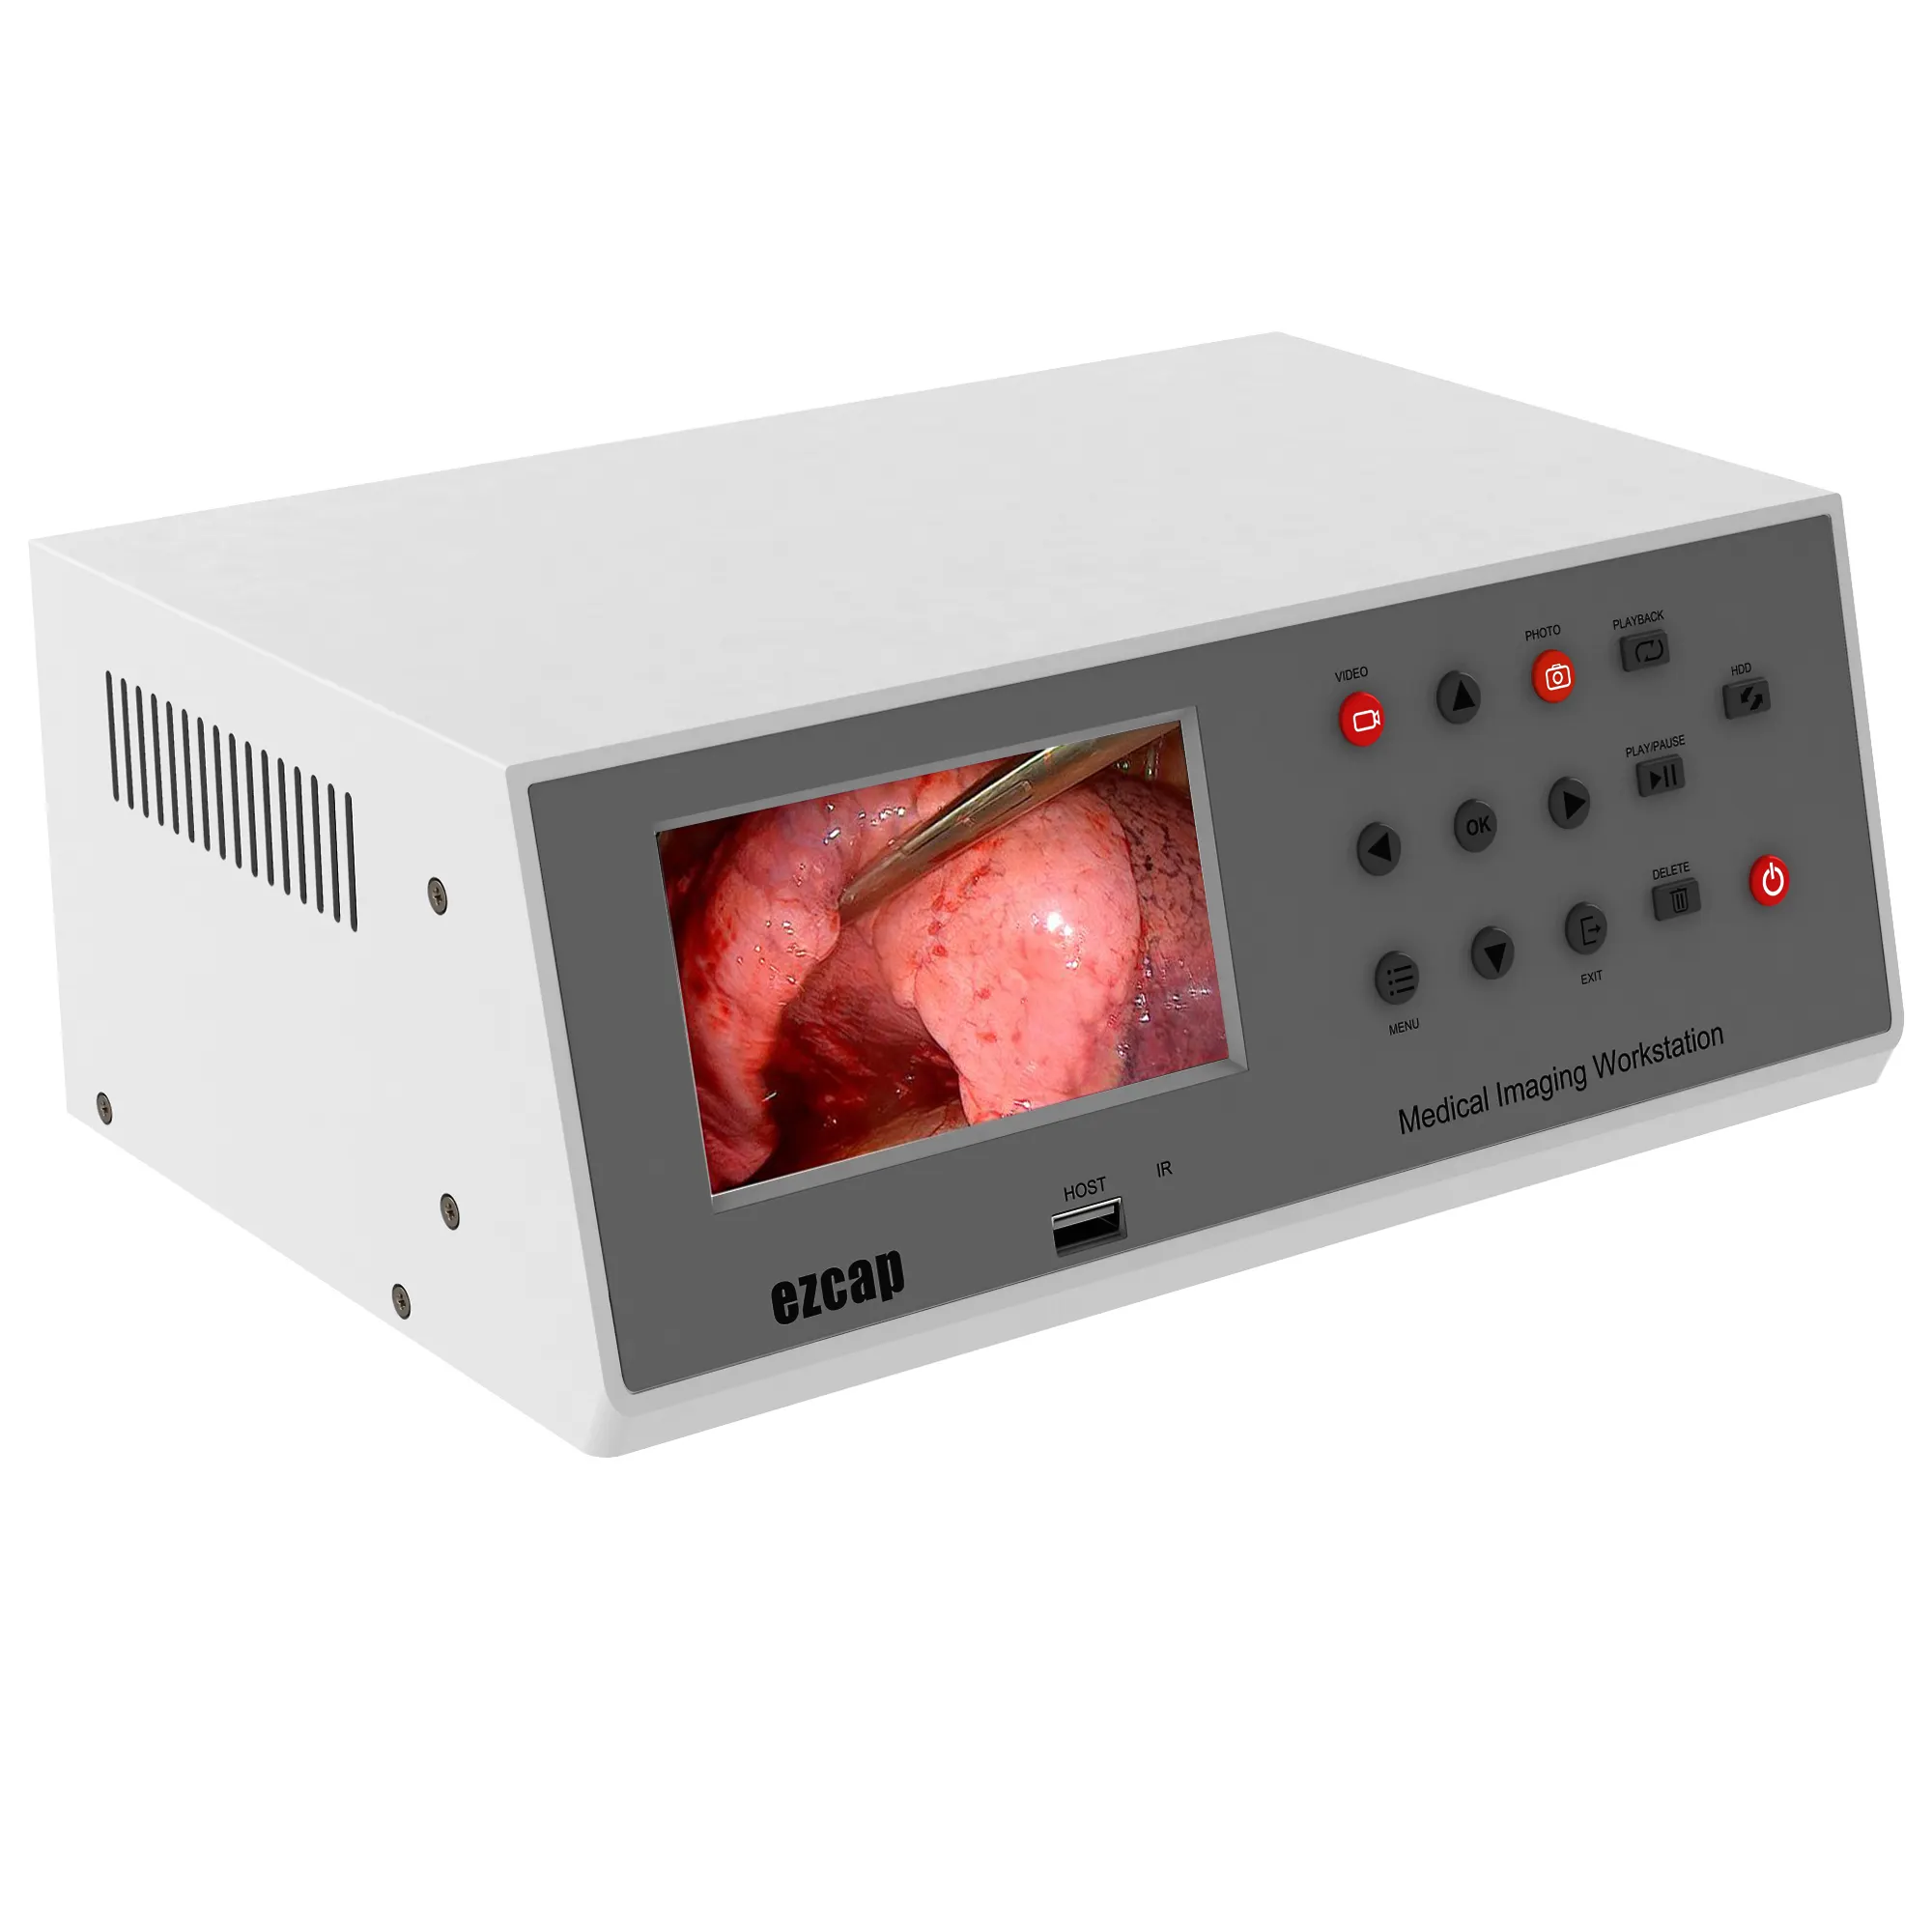 Ezcap медицинская рабочая станция для съемки видео с поддержкой SDI, DVI, VGA, HDMI, компонентное видео и вход CVBS